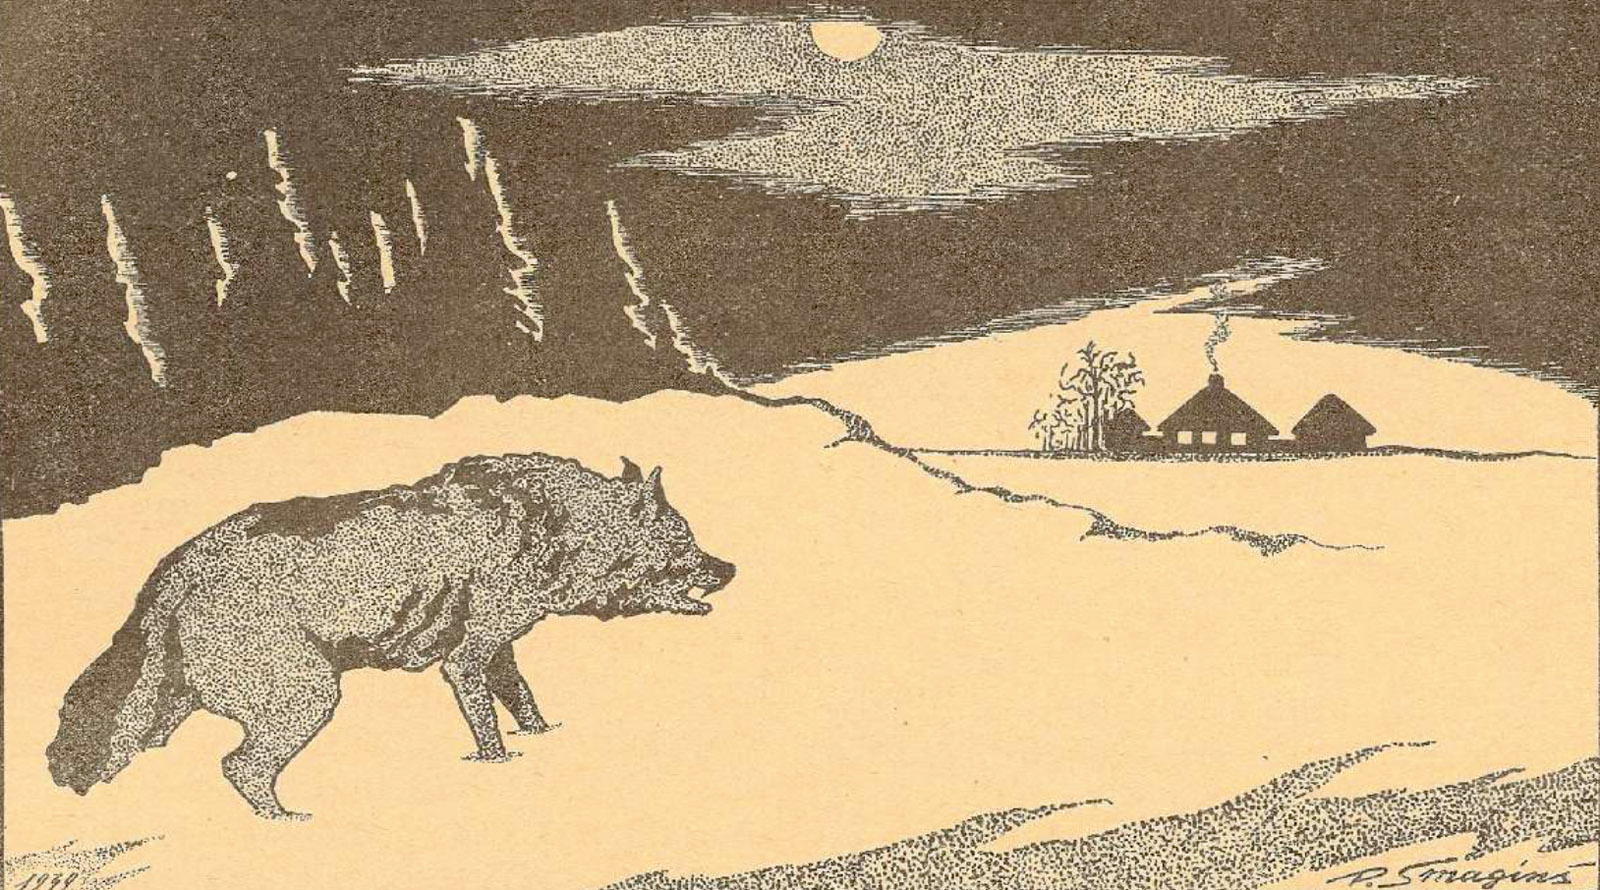 Ilustrācija izdevumā "Mednieks un Makšķernieks", 1940. gada 1. februāris.